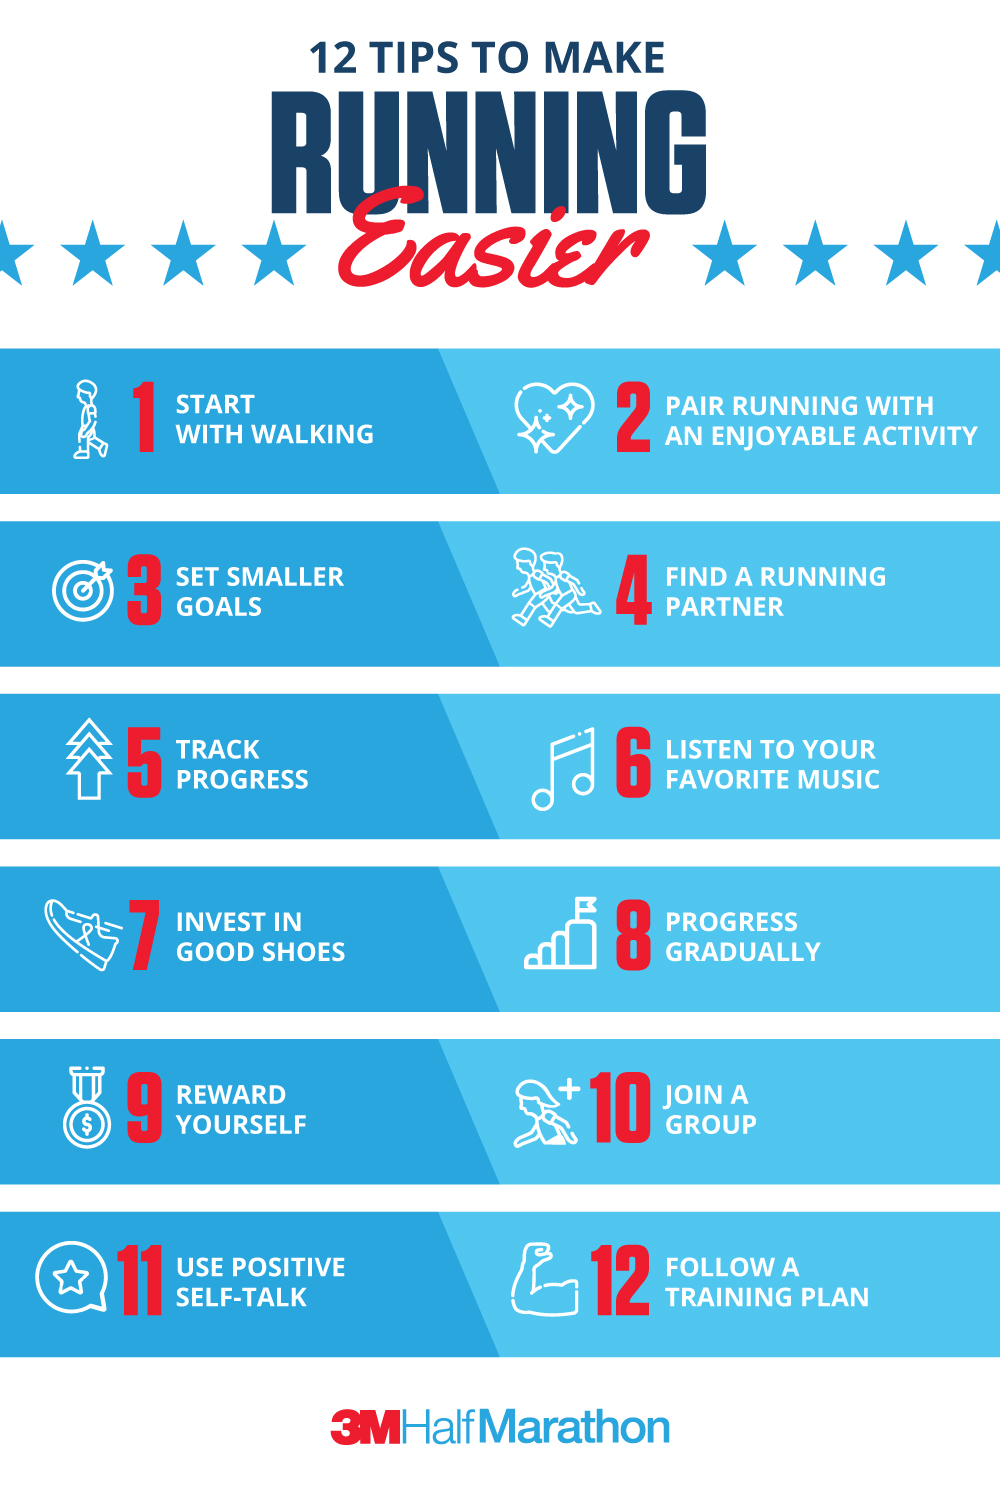 5 Tips for Beginner Trail Runners 